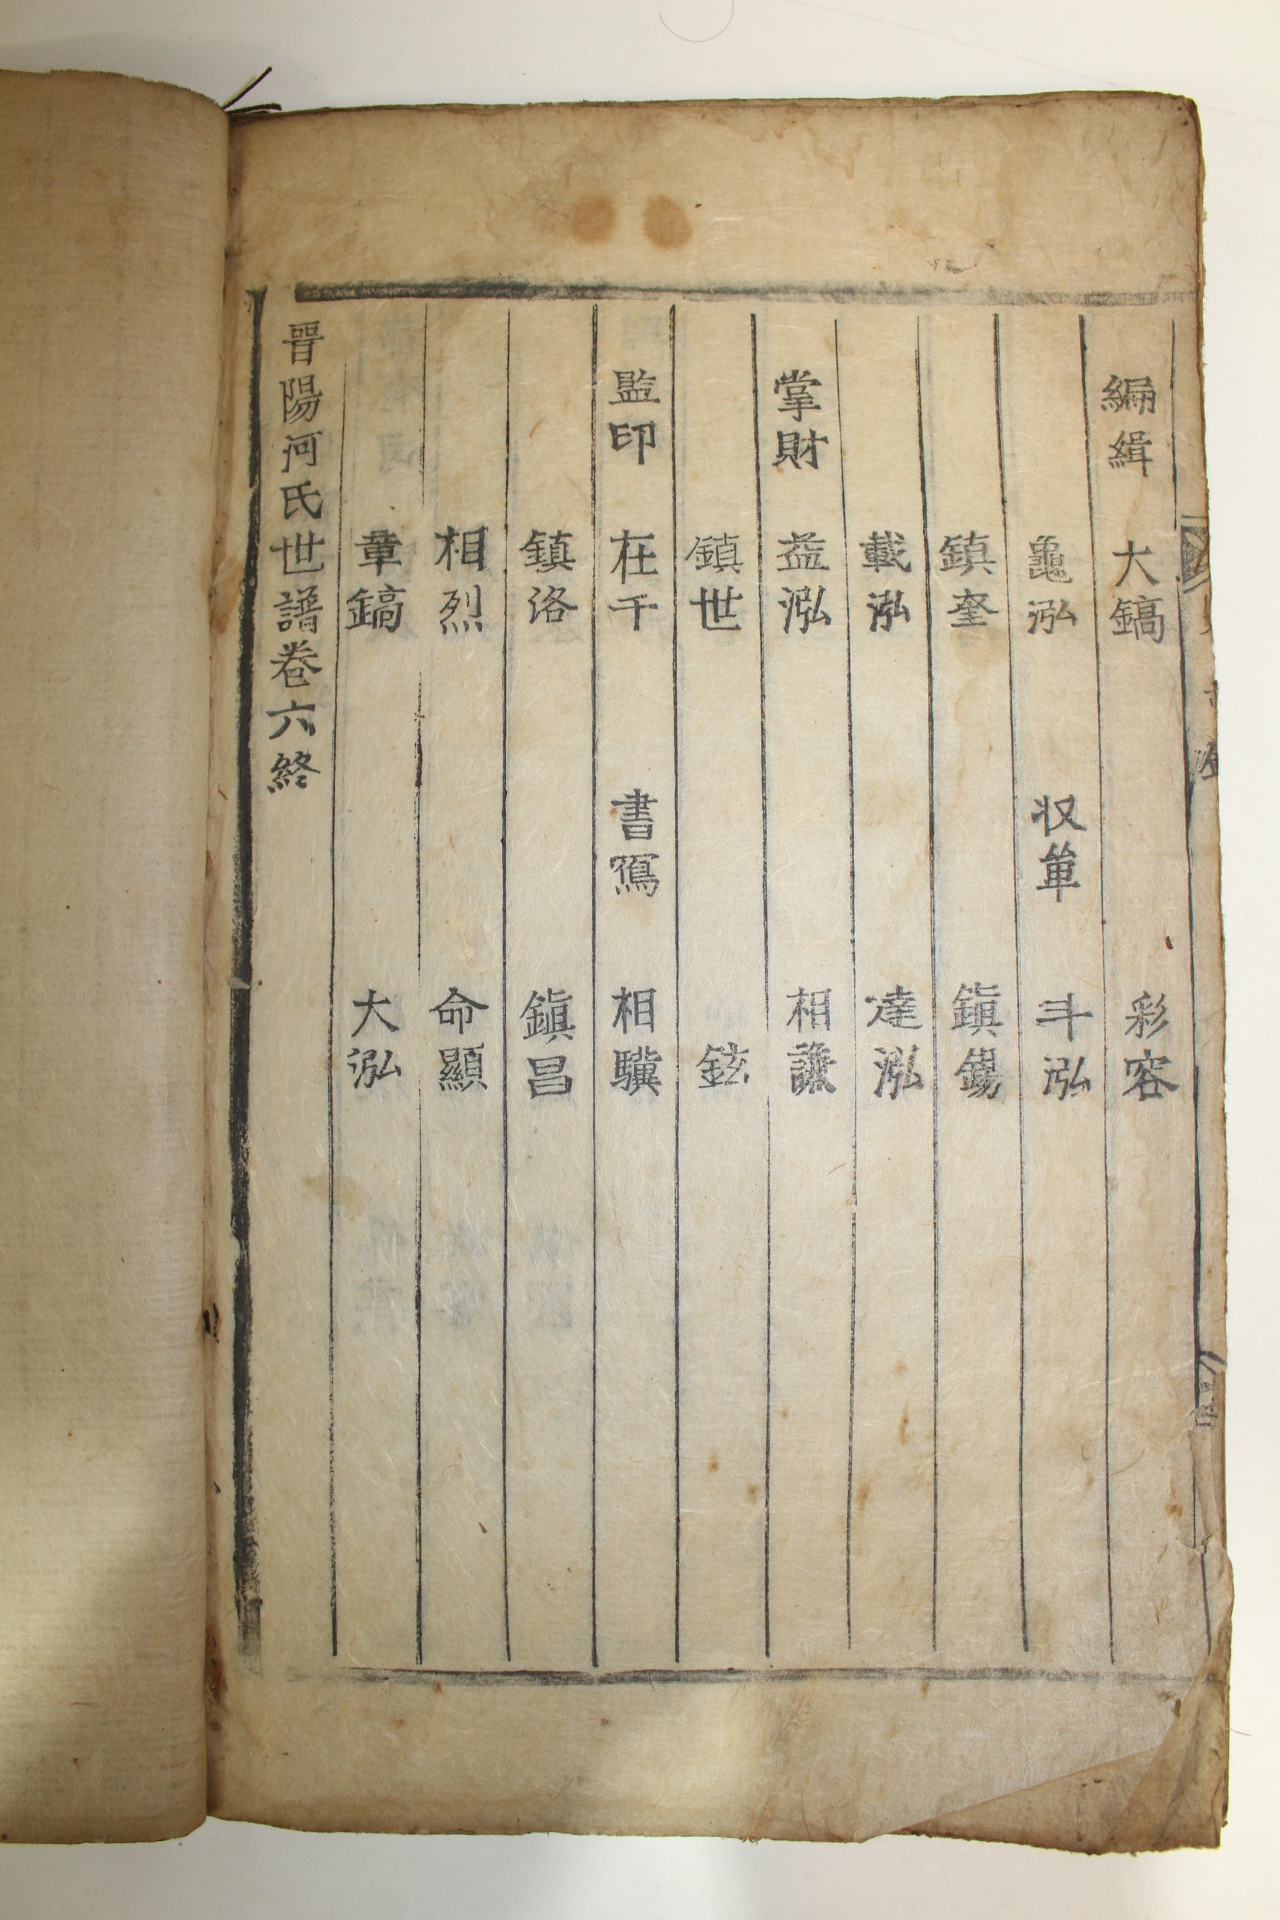 1857년(丁巳年) 목활자본 진양하씨세보(晋陽河氏世譜) 6권6책완질